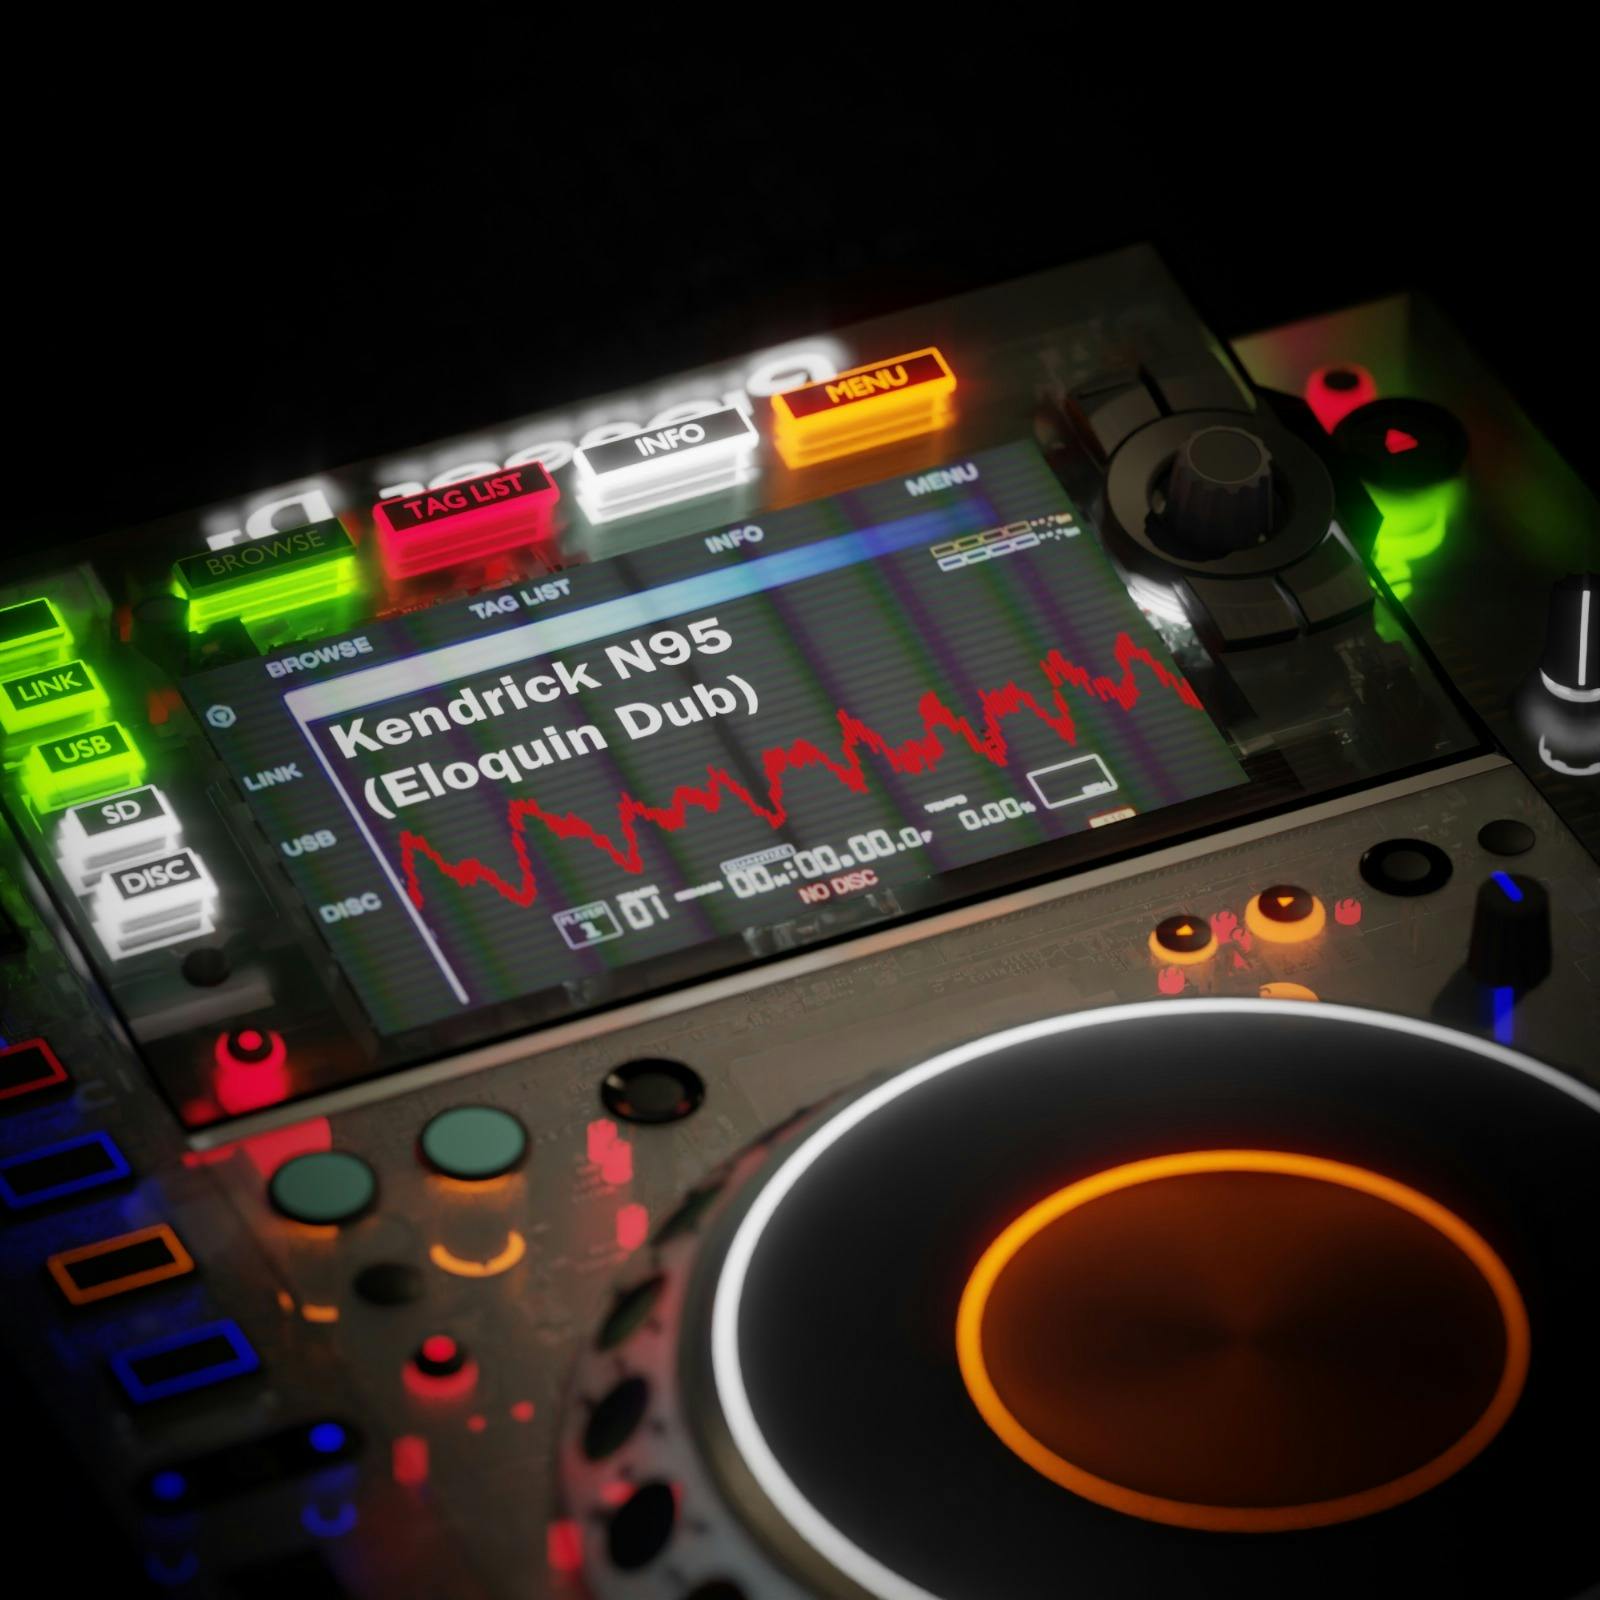 Kendrick N95 (Eloquin Dub)